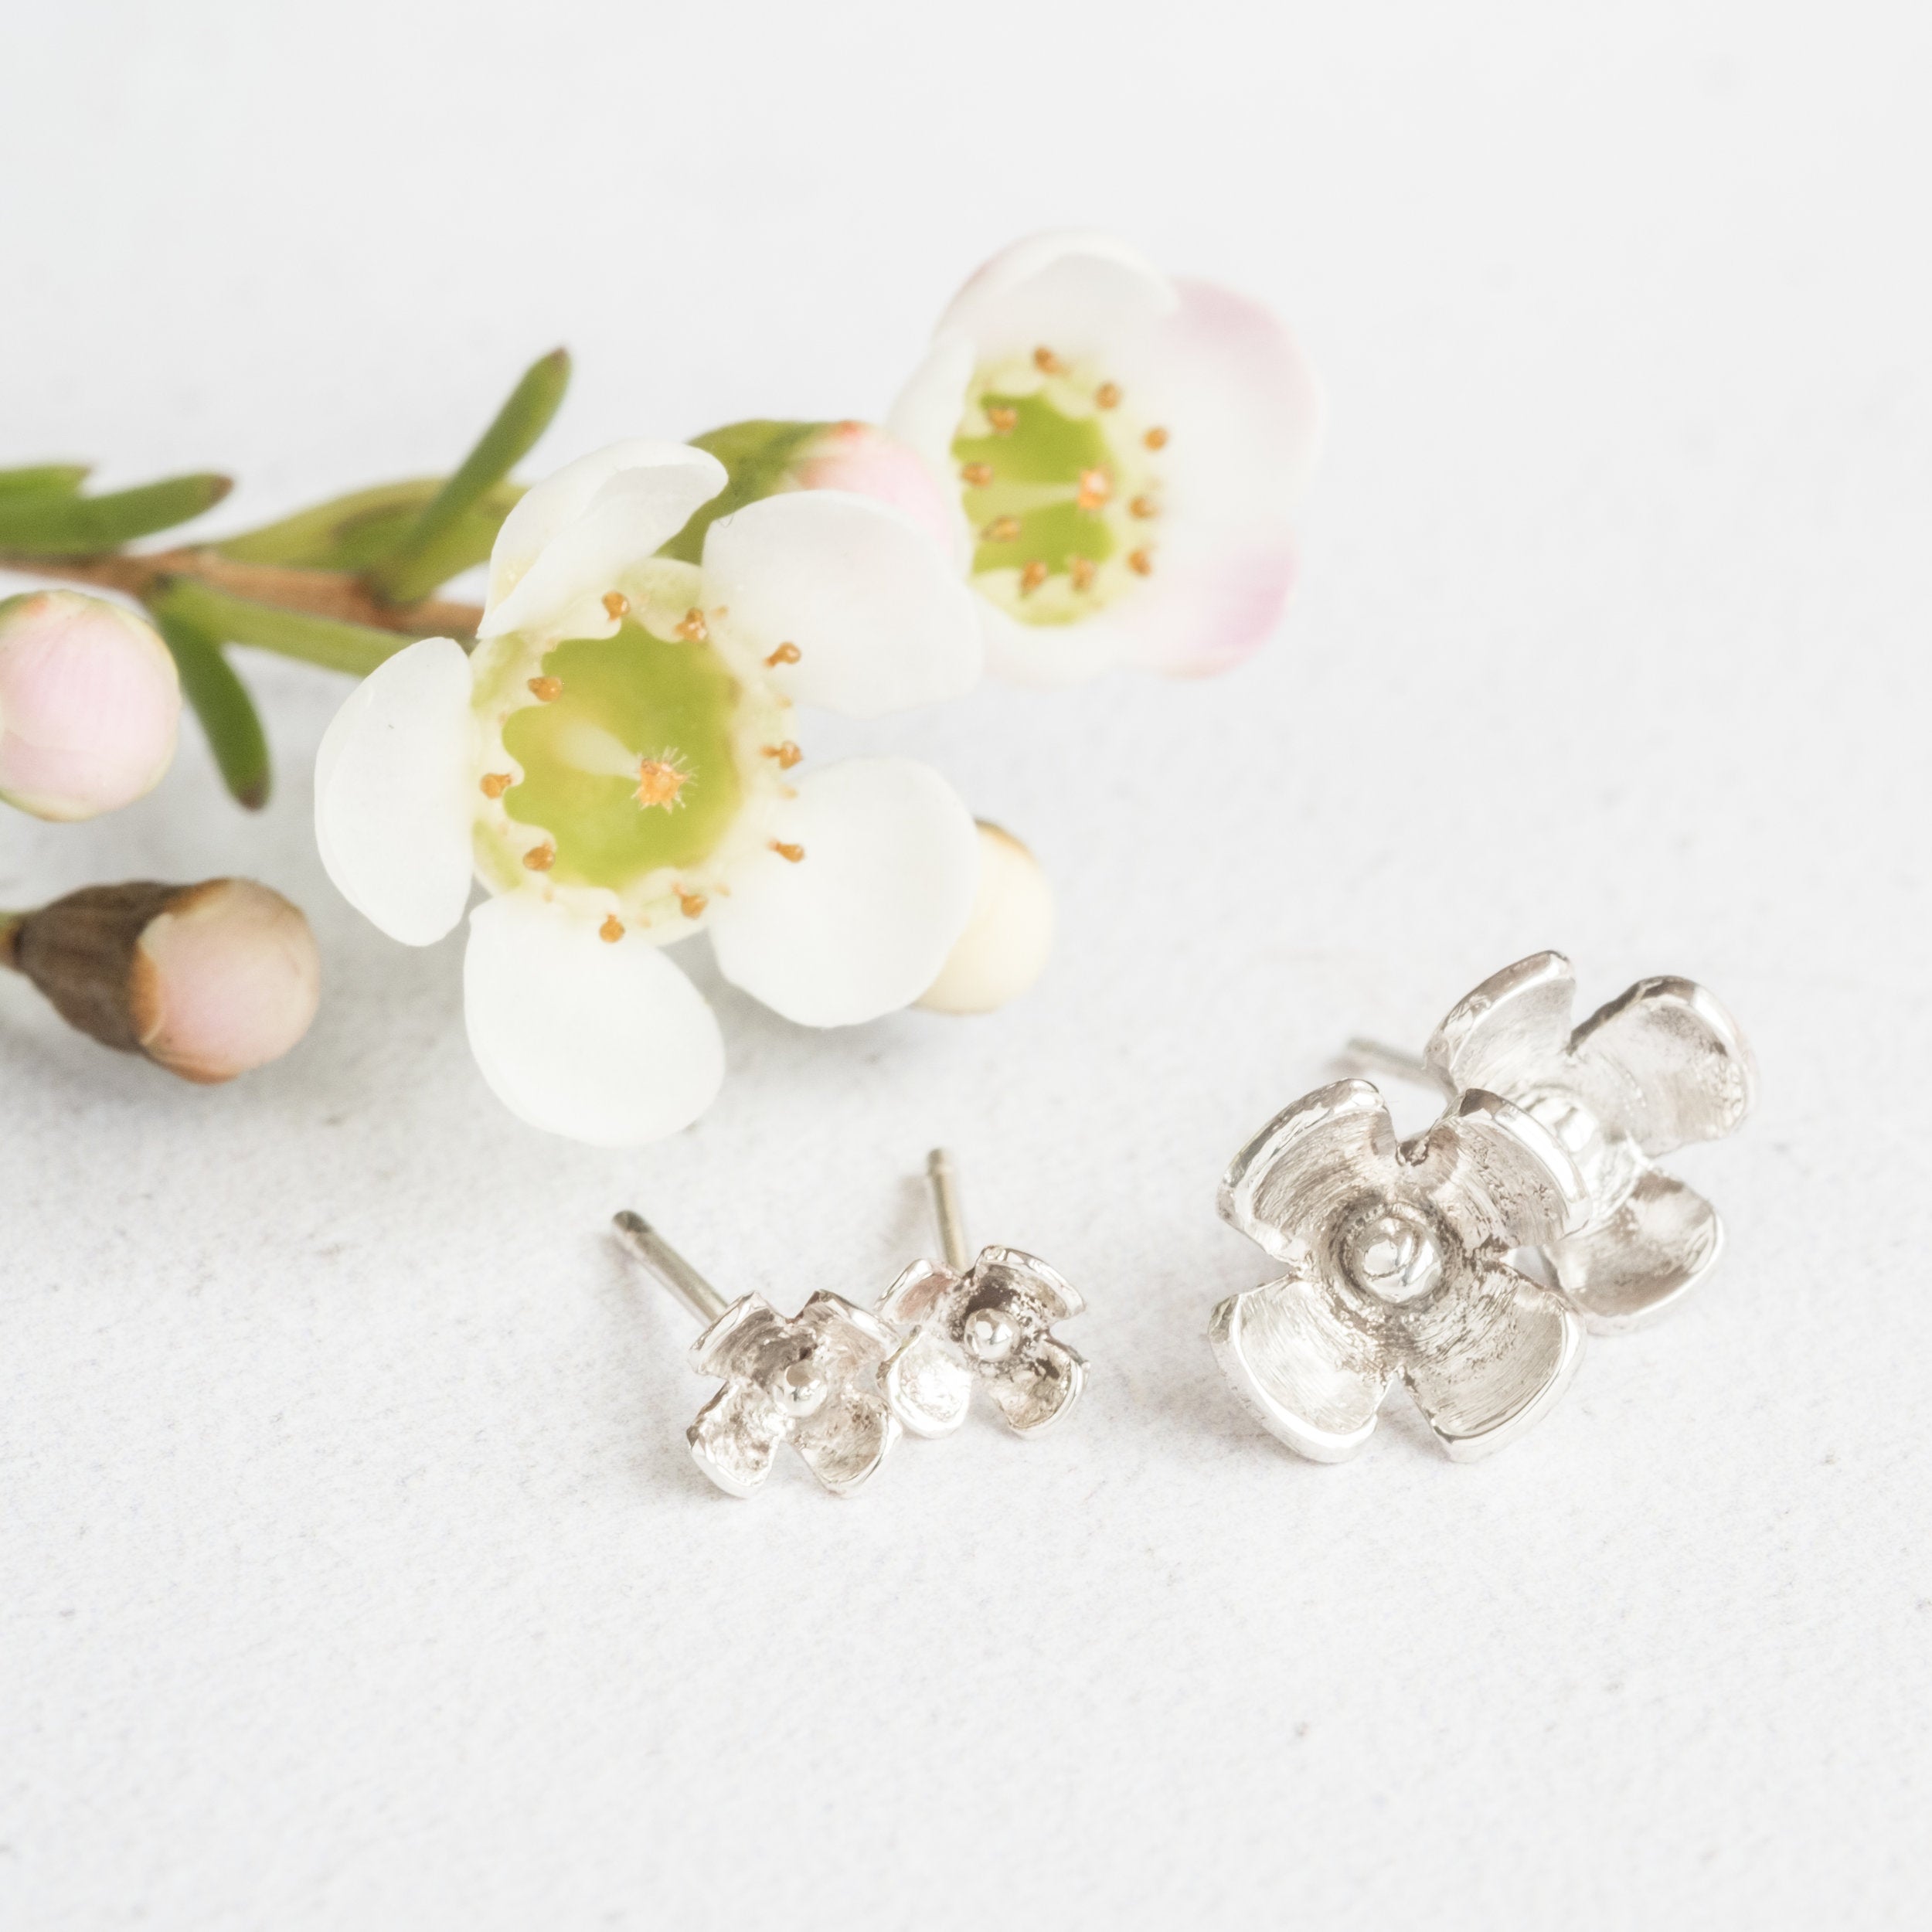 Blossom Flower Sterling Silver Stud Earrings Lunar Moth Jewellery